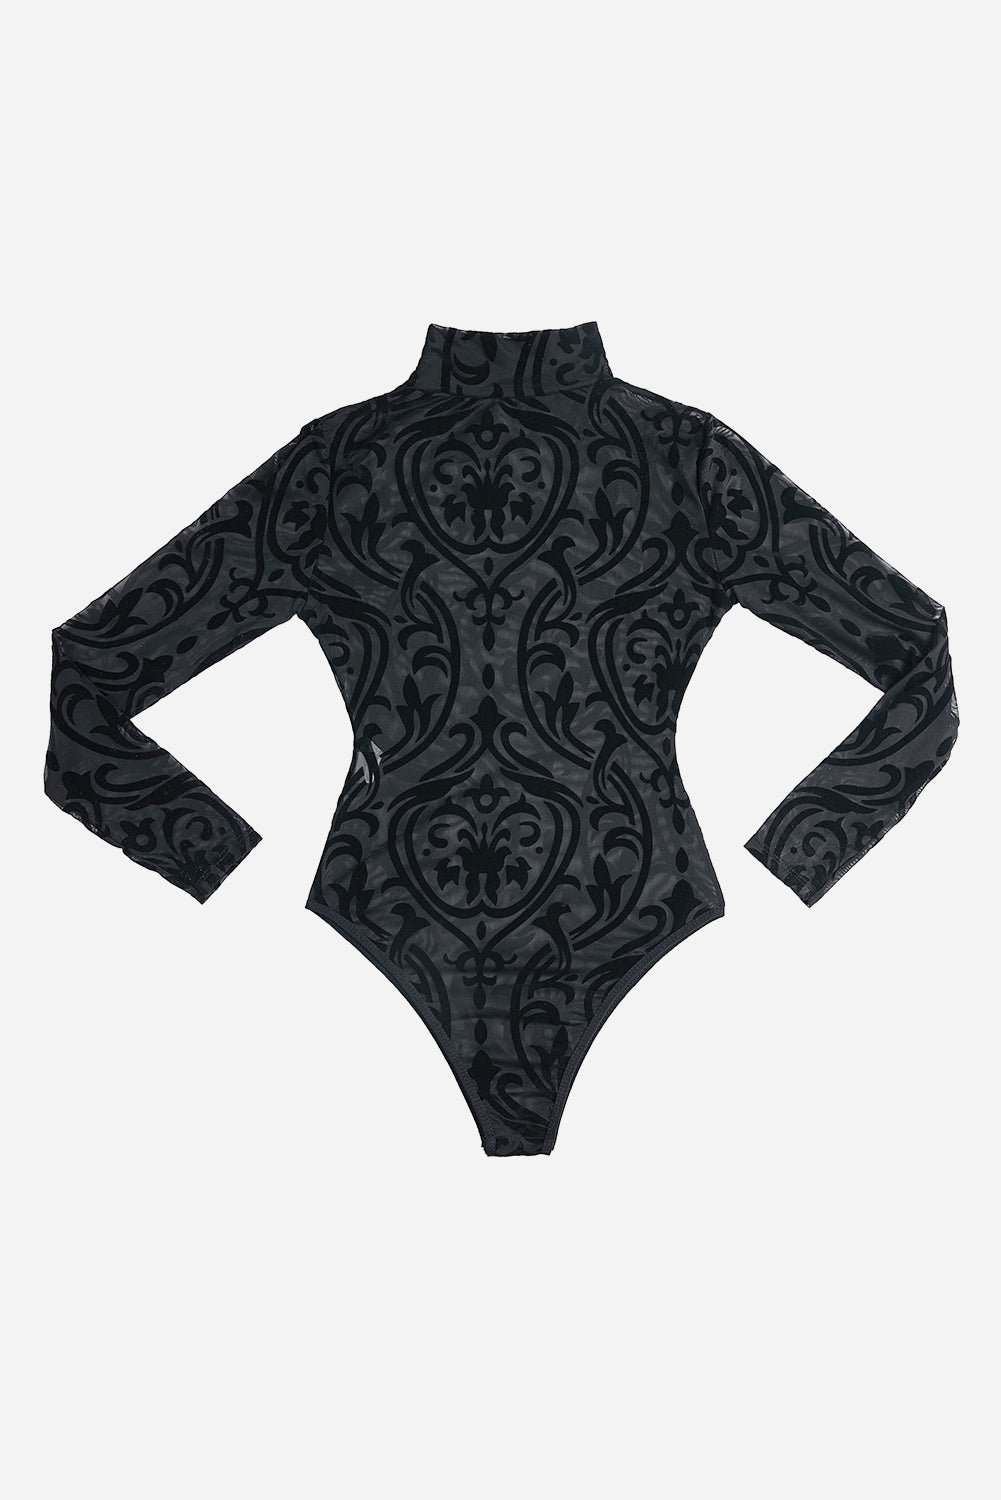 Black Sheer Mesh Pattern High Neck Long Sleeve Bodysuit